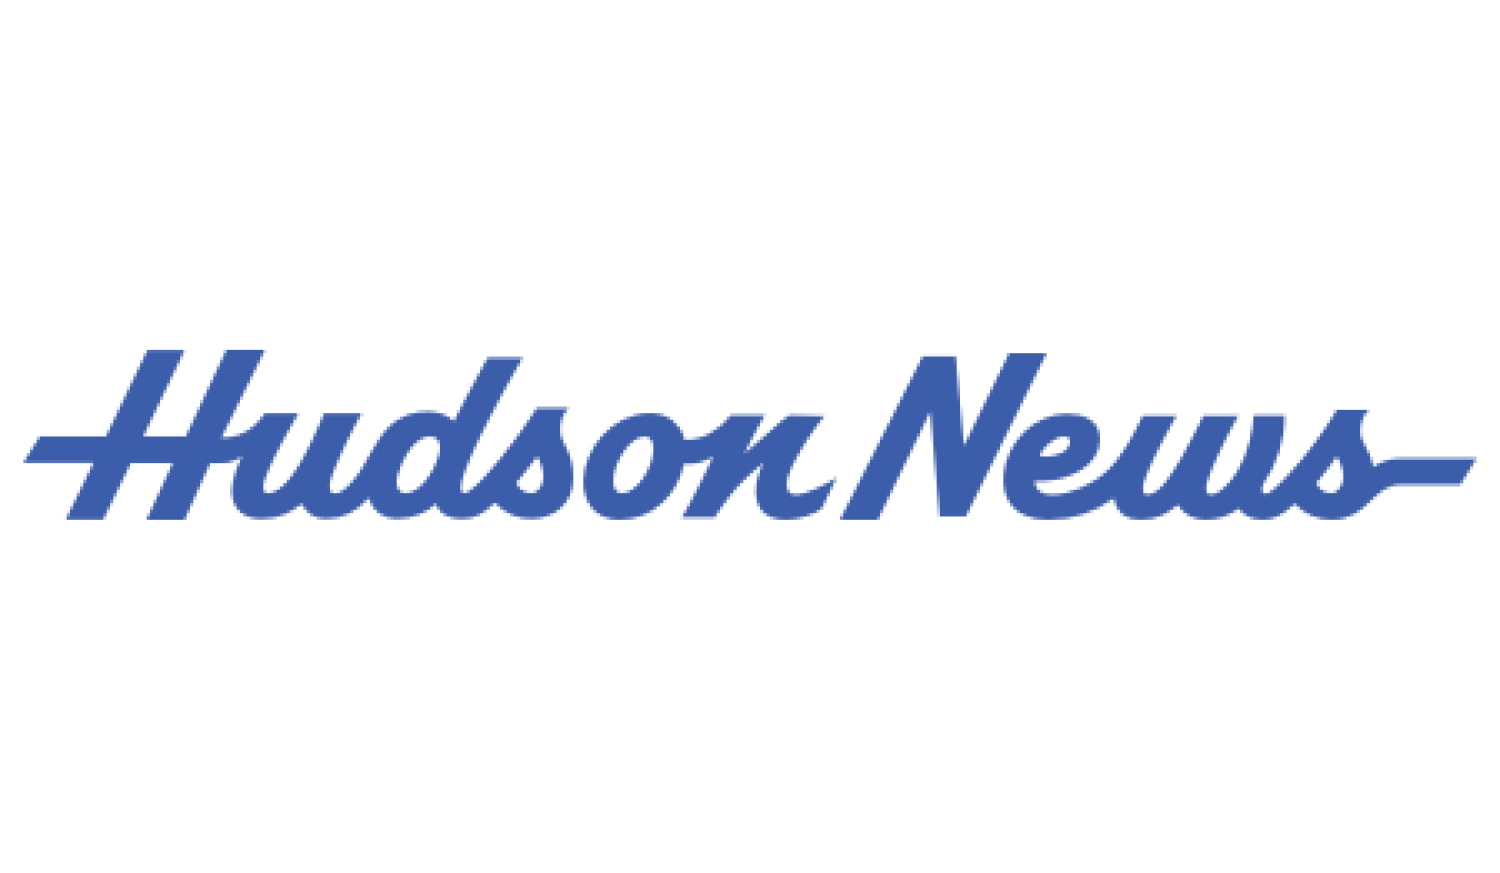 Logo hudson news